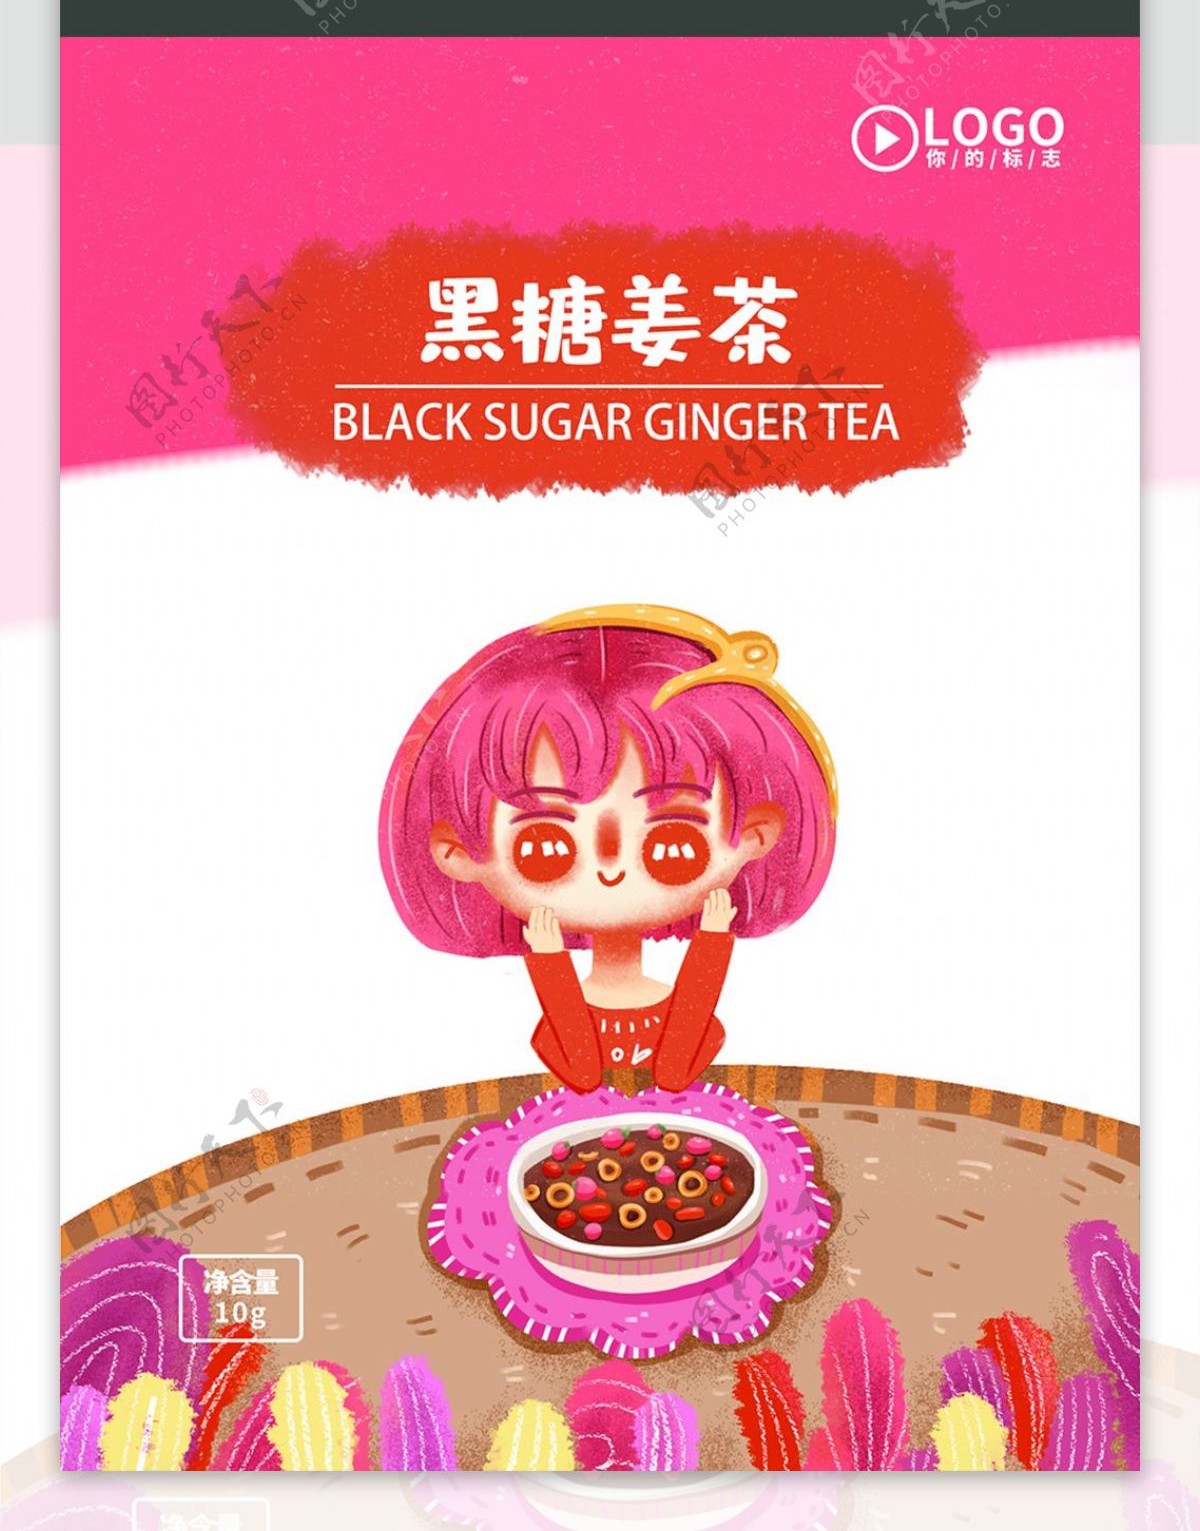 黑糖姜茶包装可爱卡通治愈小清新茶叶包装